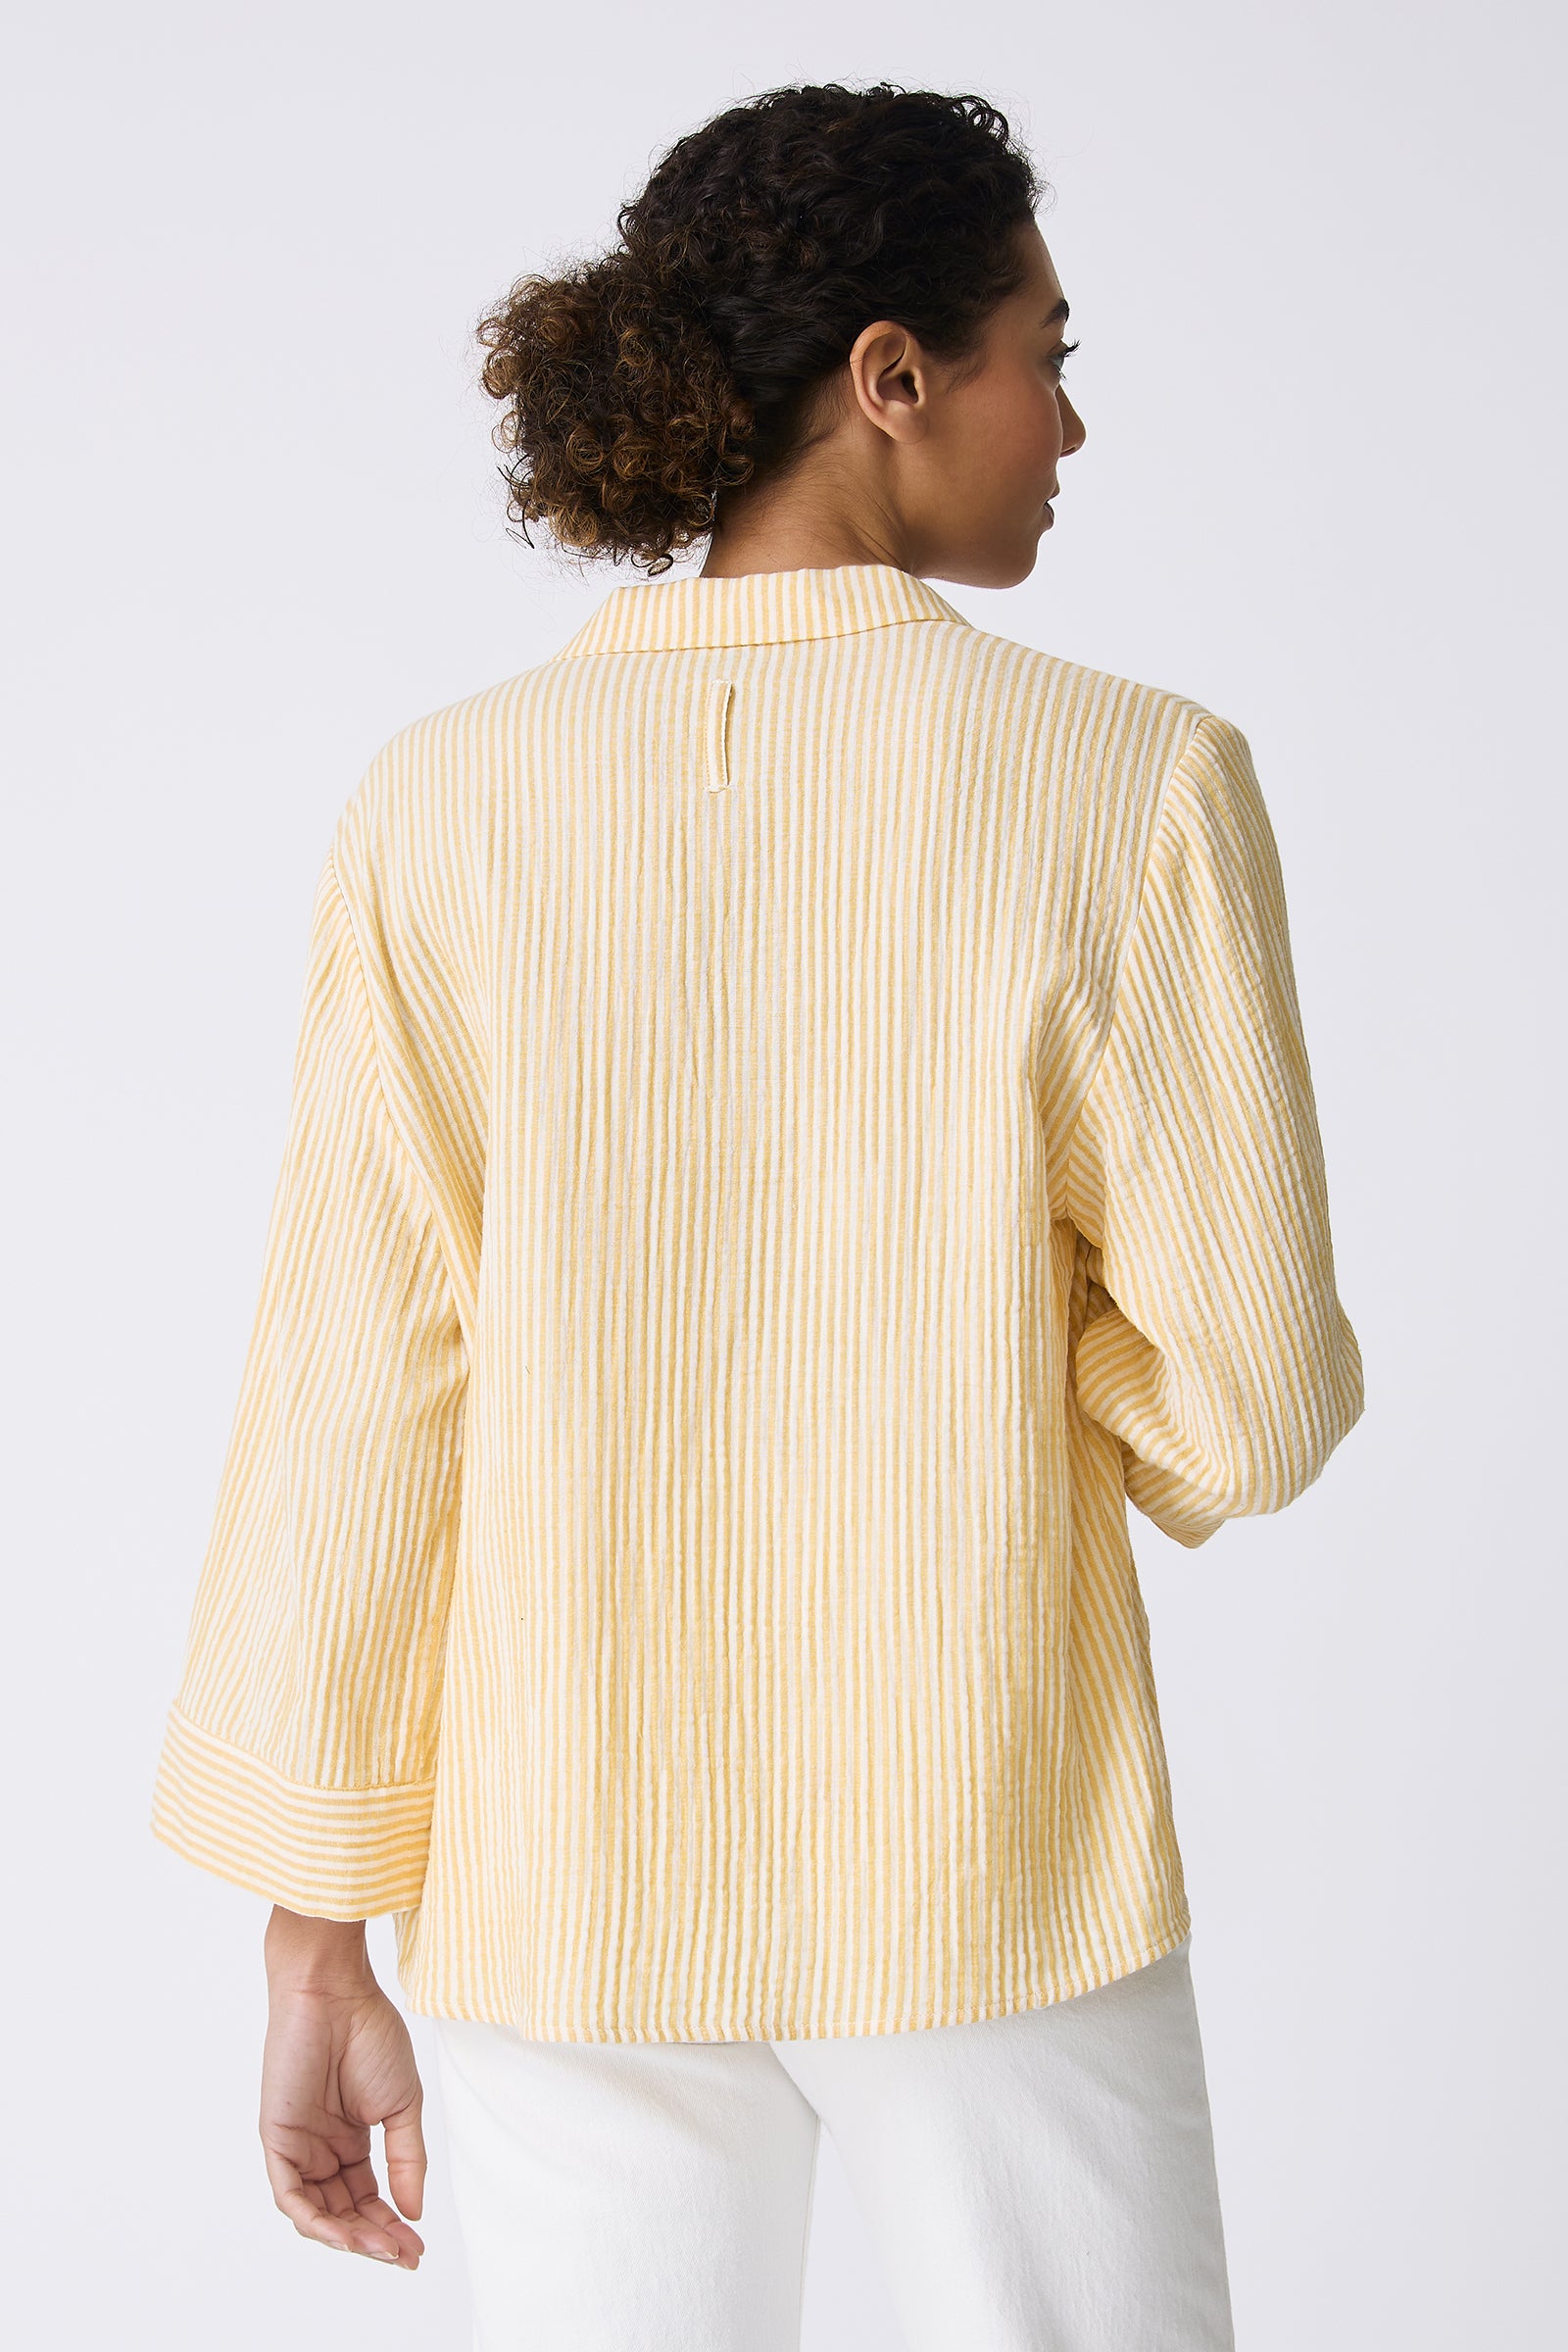 Kal Rieman Tropez Pullover in Honey Stripe on model back view